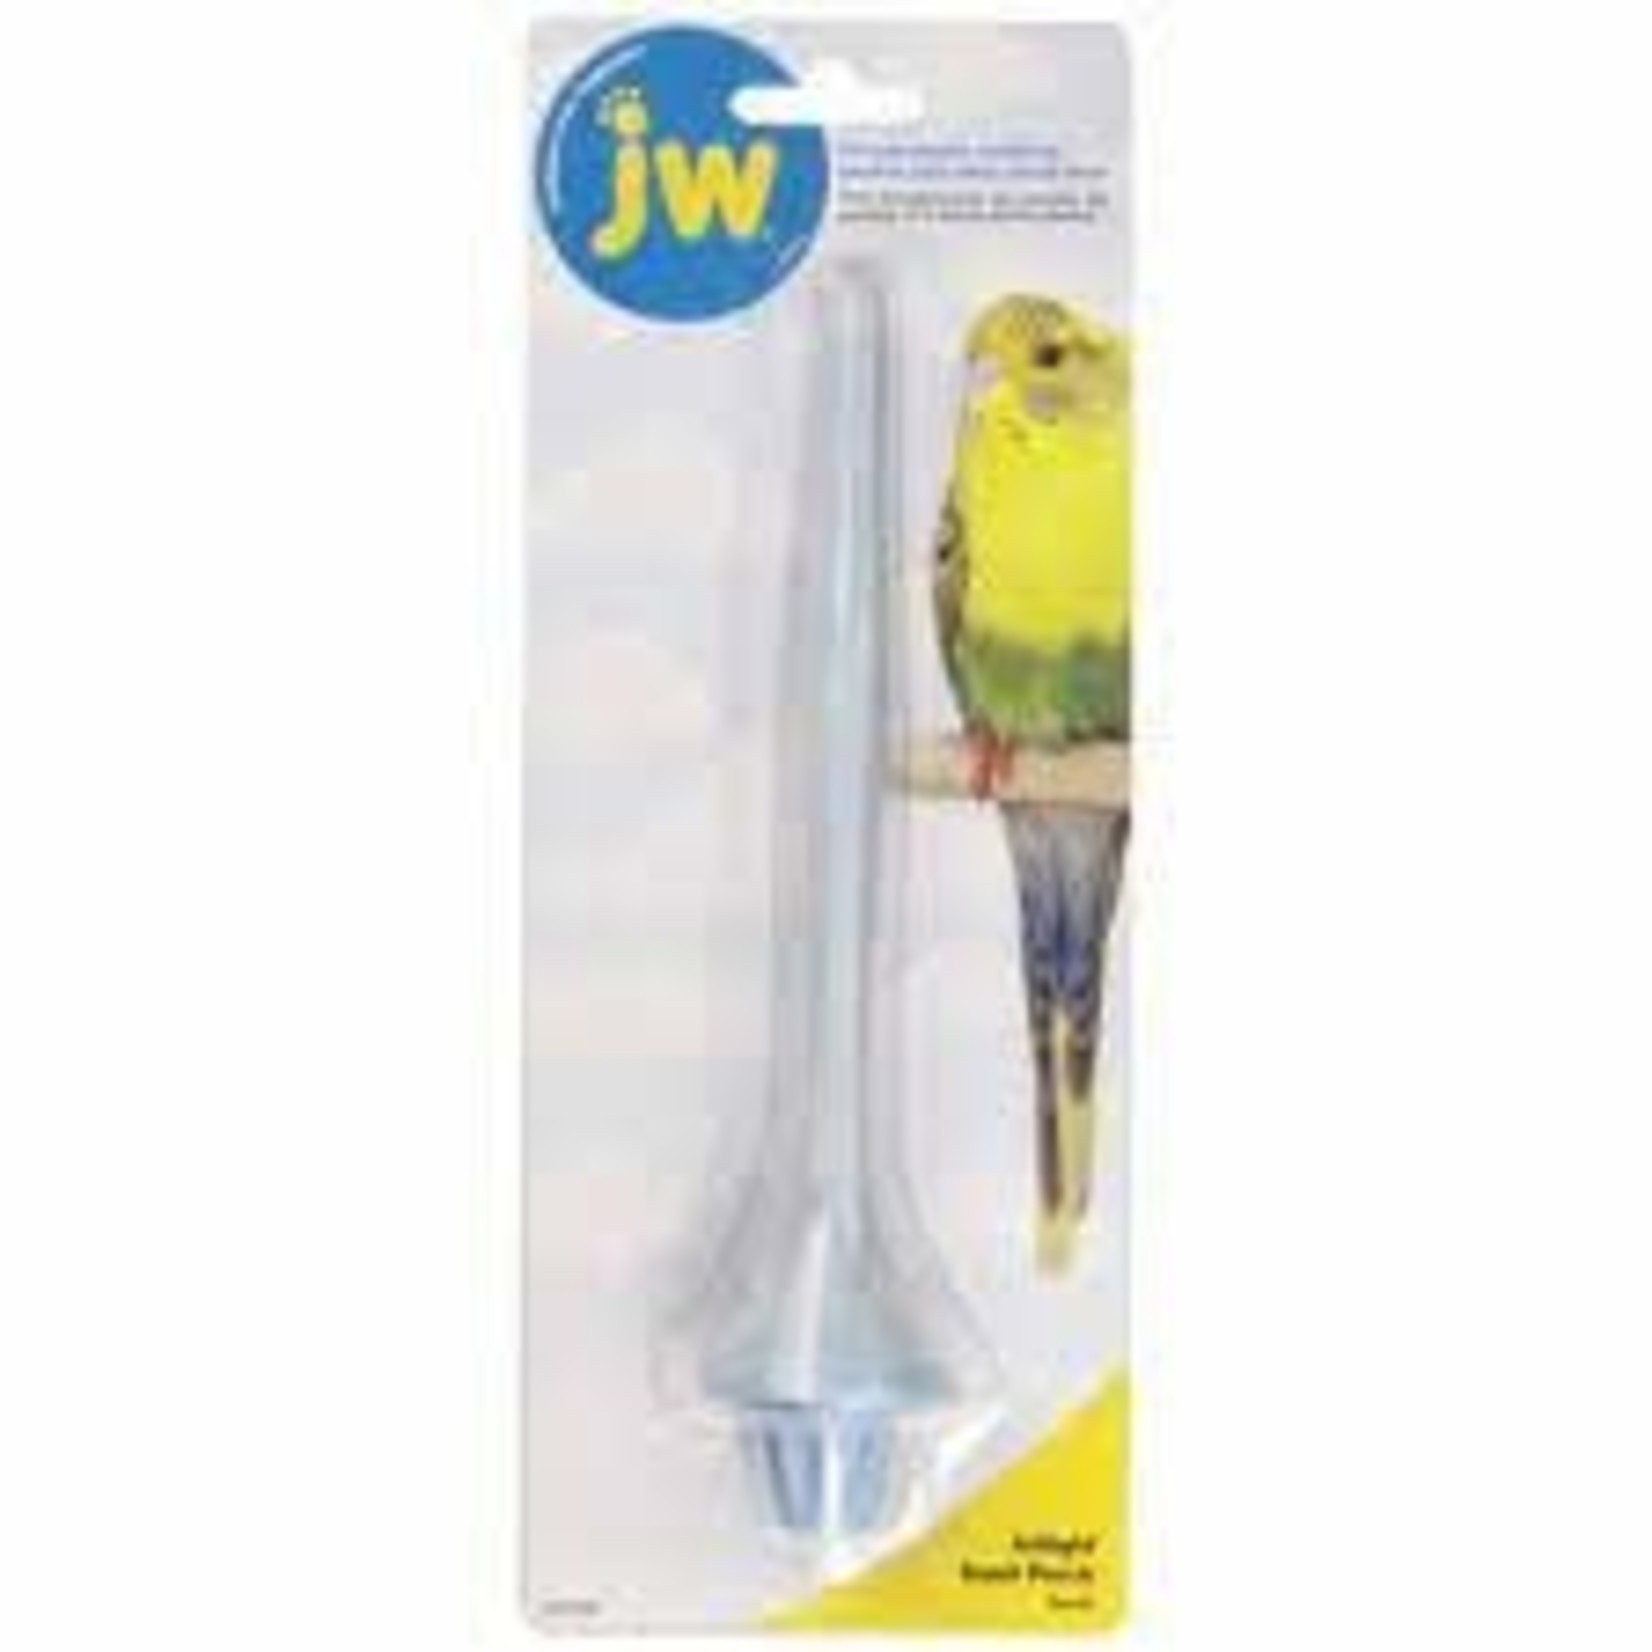 JW PET COMPANY JW BIRD SAND PERCH SMALL